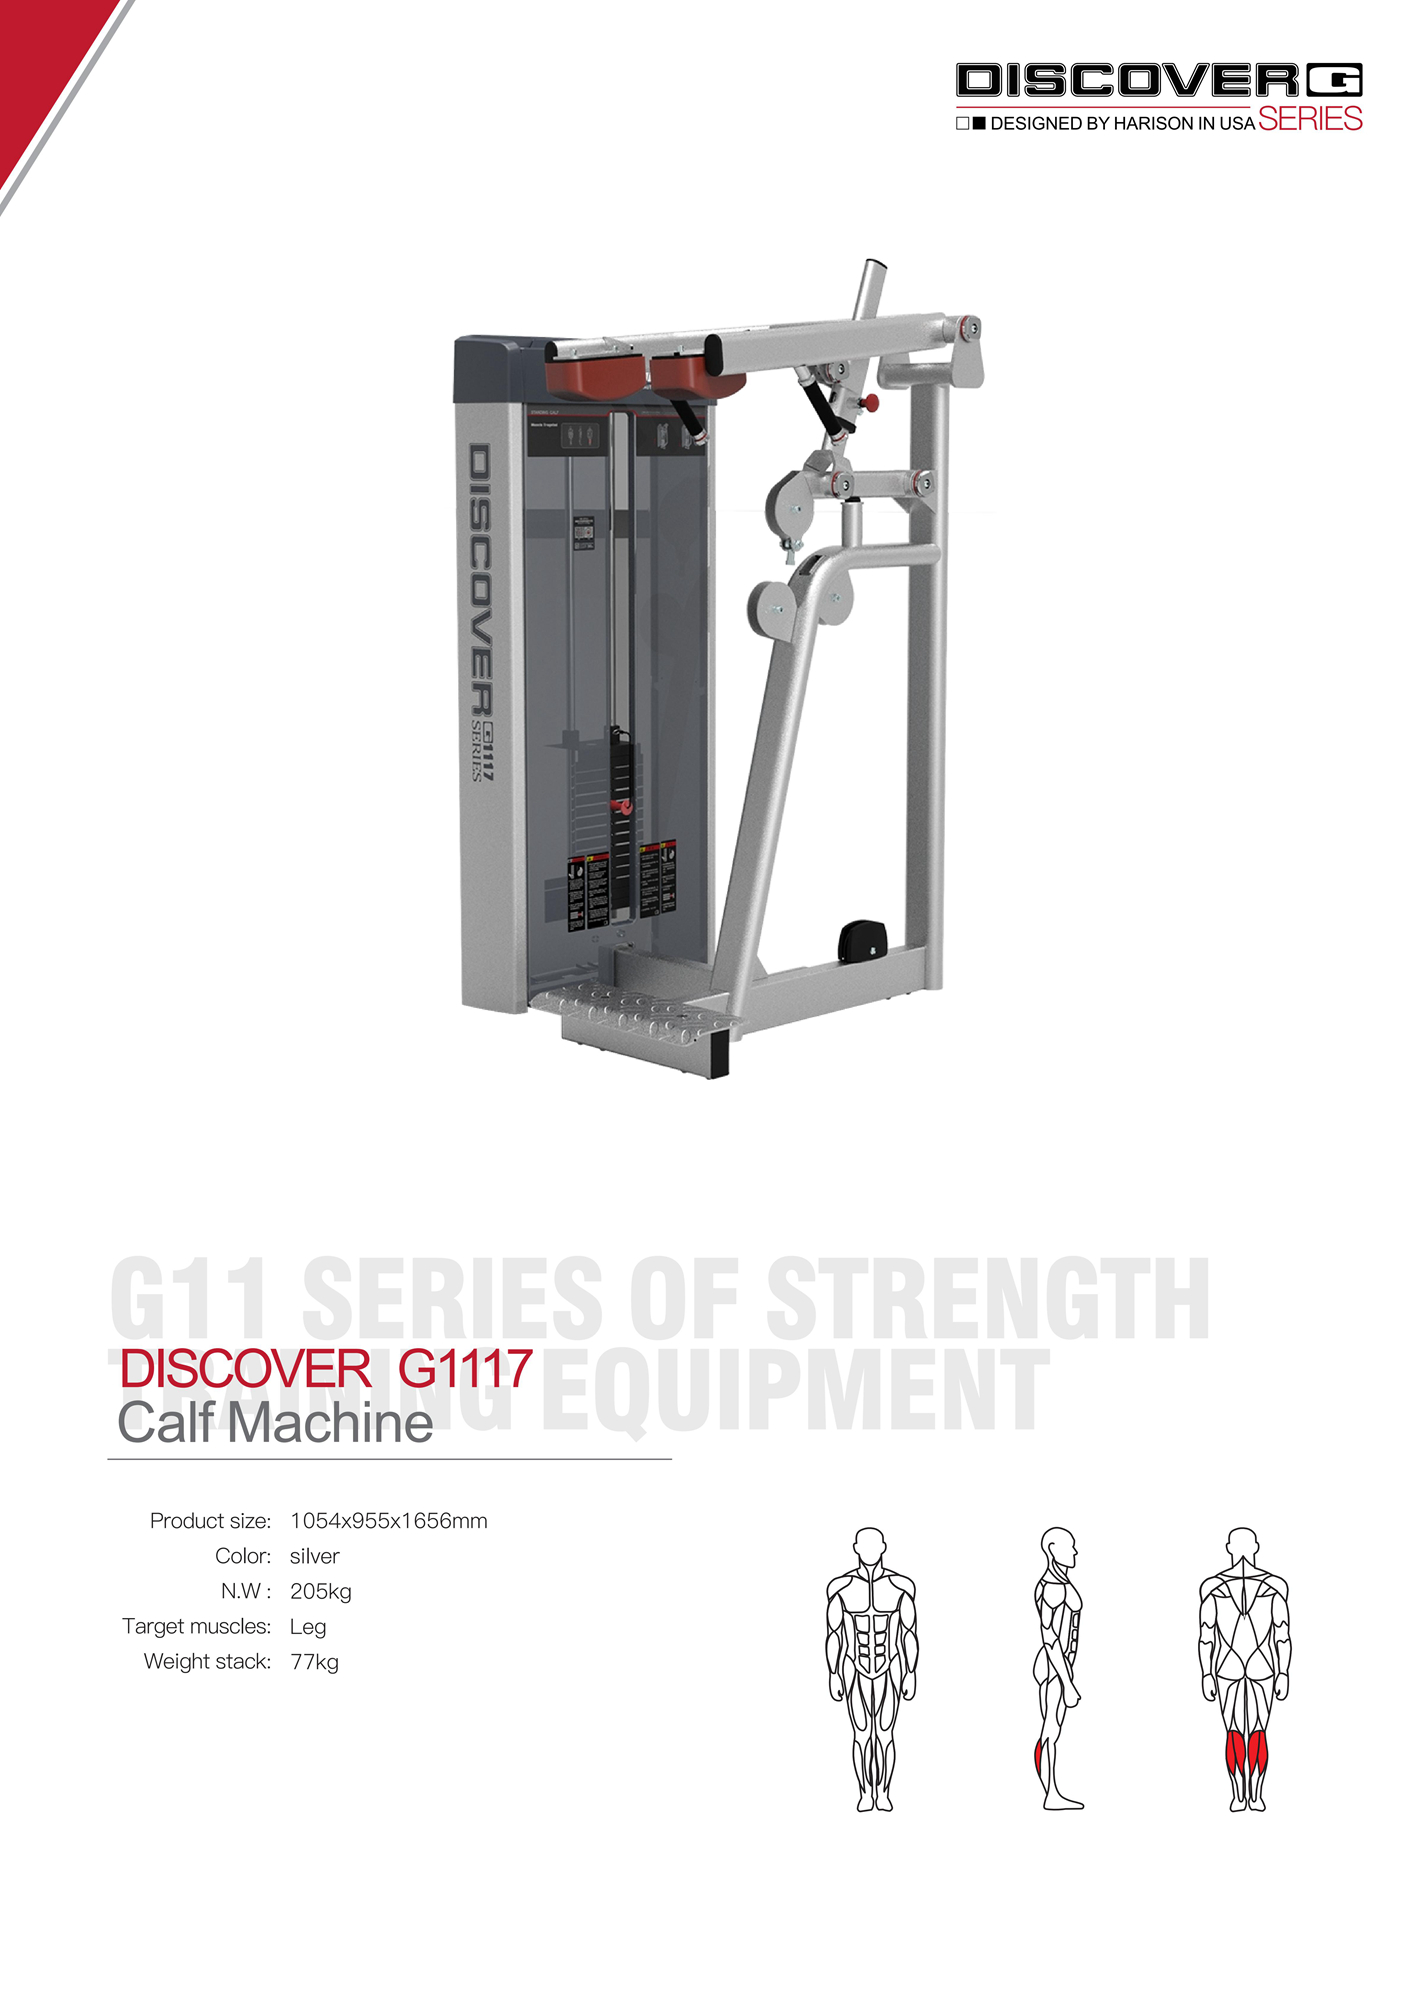 DISCOVER G1117 Calf Machine